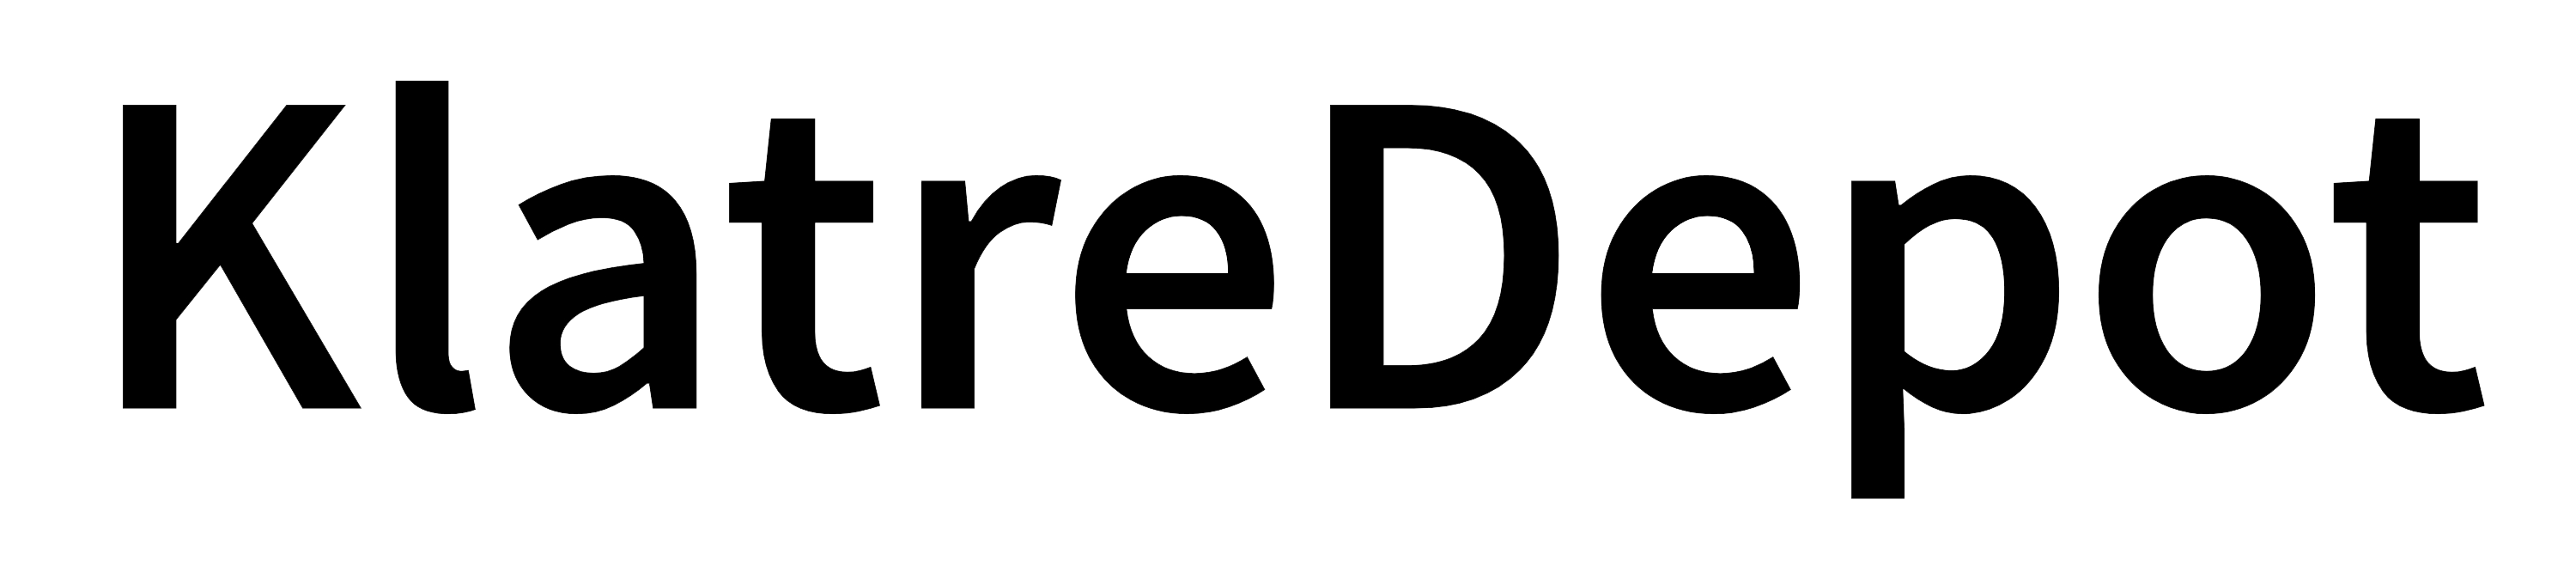 Klatredepot Logo